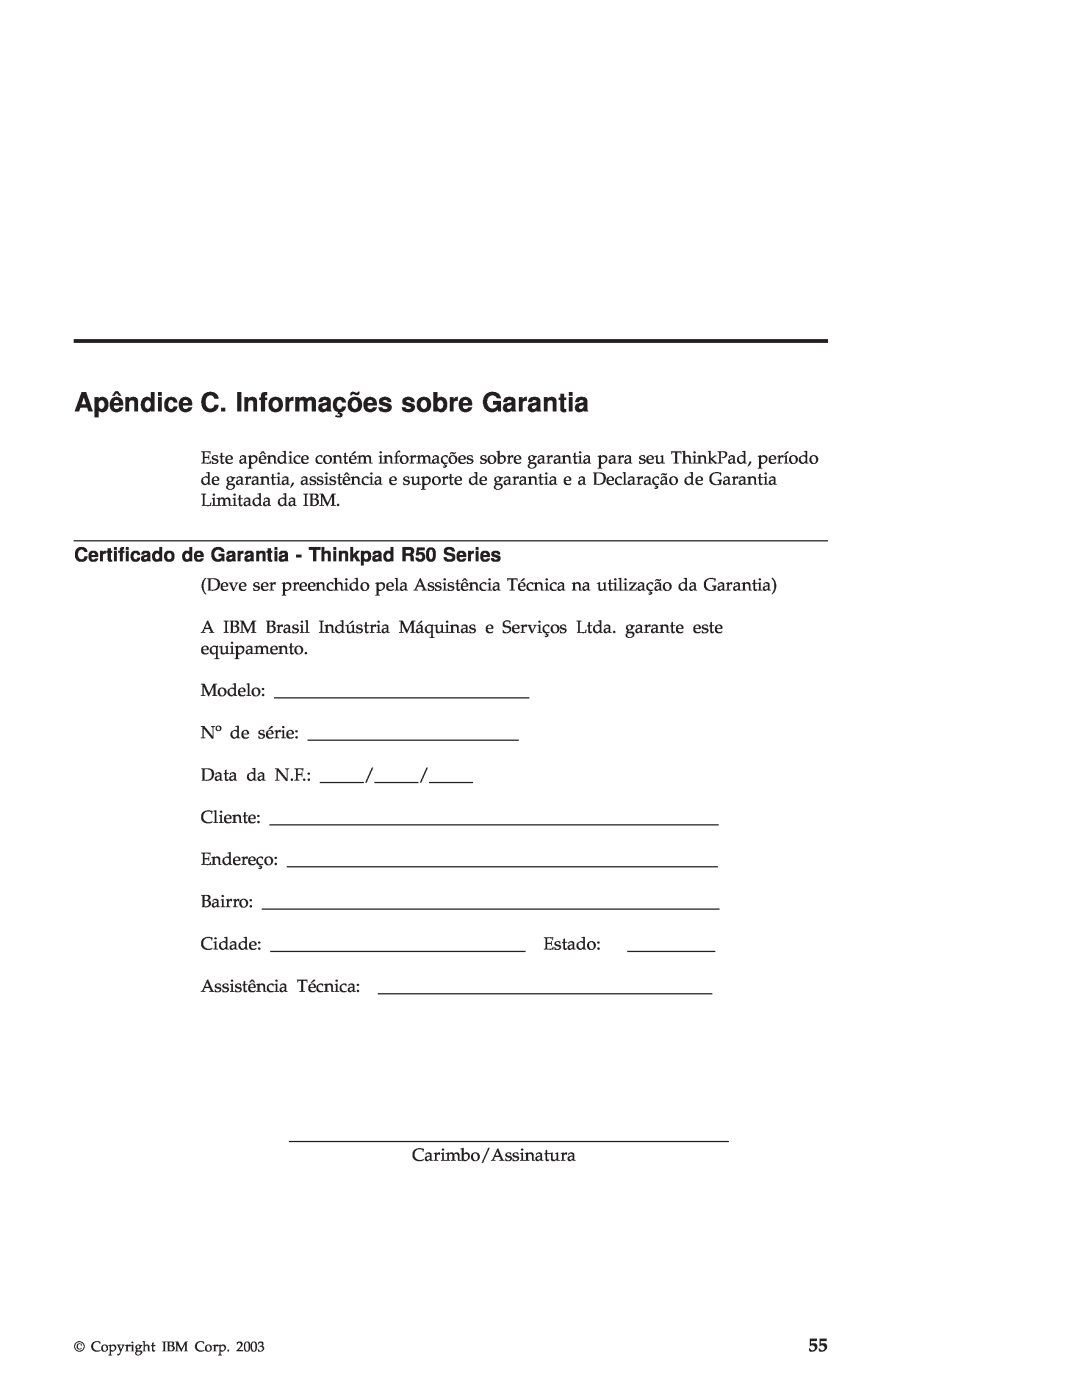 IBM manual Apêndice C. Informações sobre Garantia, Certificado de Garantia - Thinkpad R50 Series 